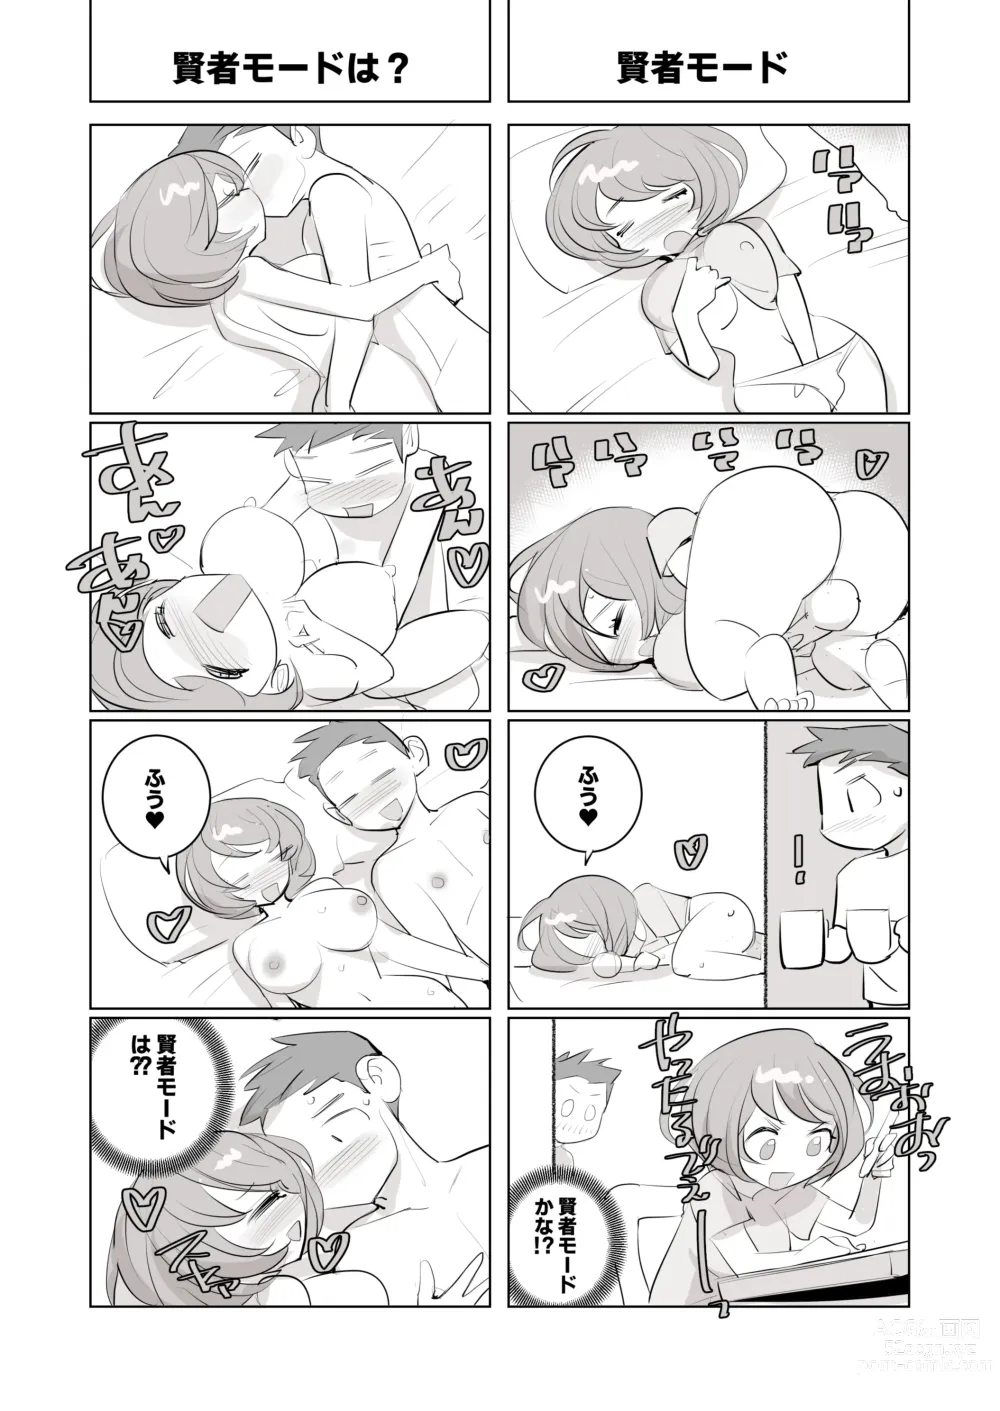 Page 26 of doujinshi 人気同人作家の妻とラブラブ新婚性活でも妻が好きすぎてNTRしてしまうボクなんです